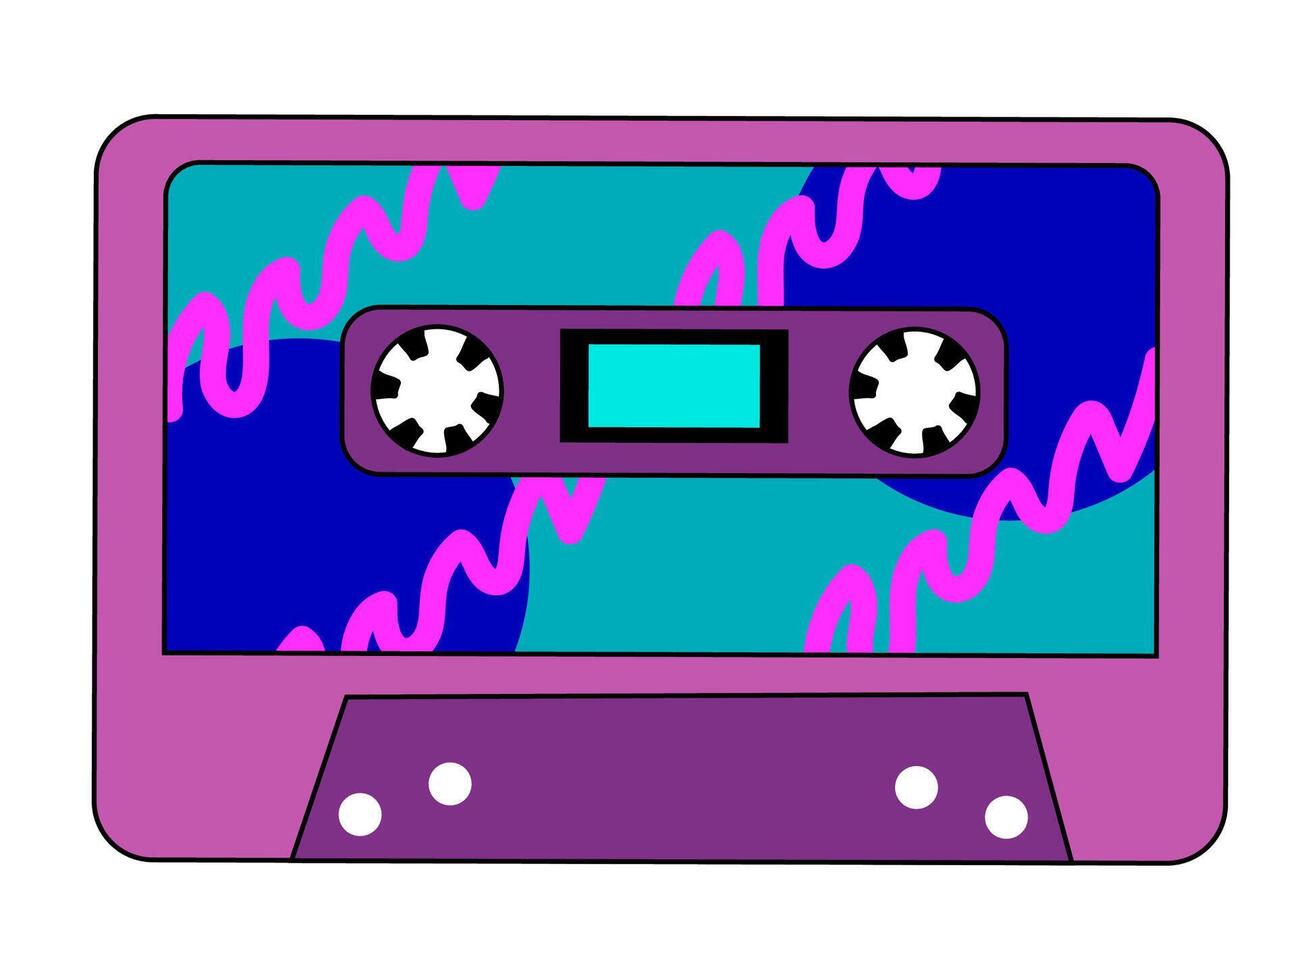 retro wijnoogst audio muziek- cassette met magnetisch plakband. abstract Purper en blauw ontwerp in jaren 90, jaren 80, jaren 70 stijl. vector vlak illustratie.